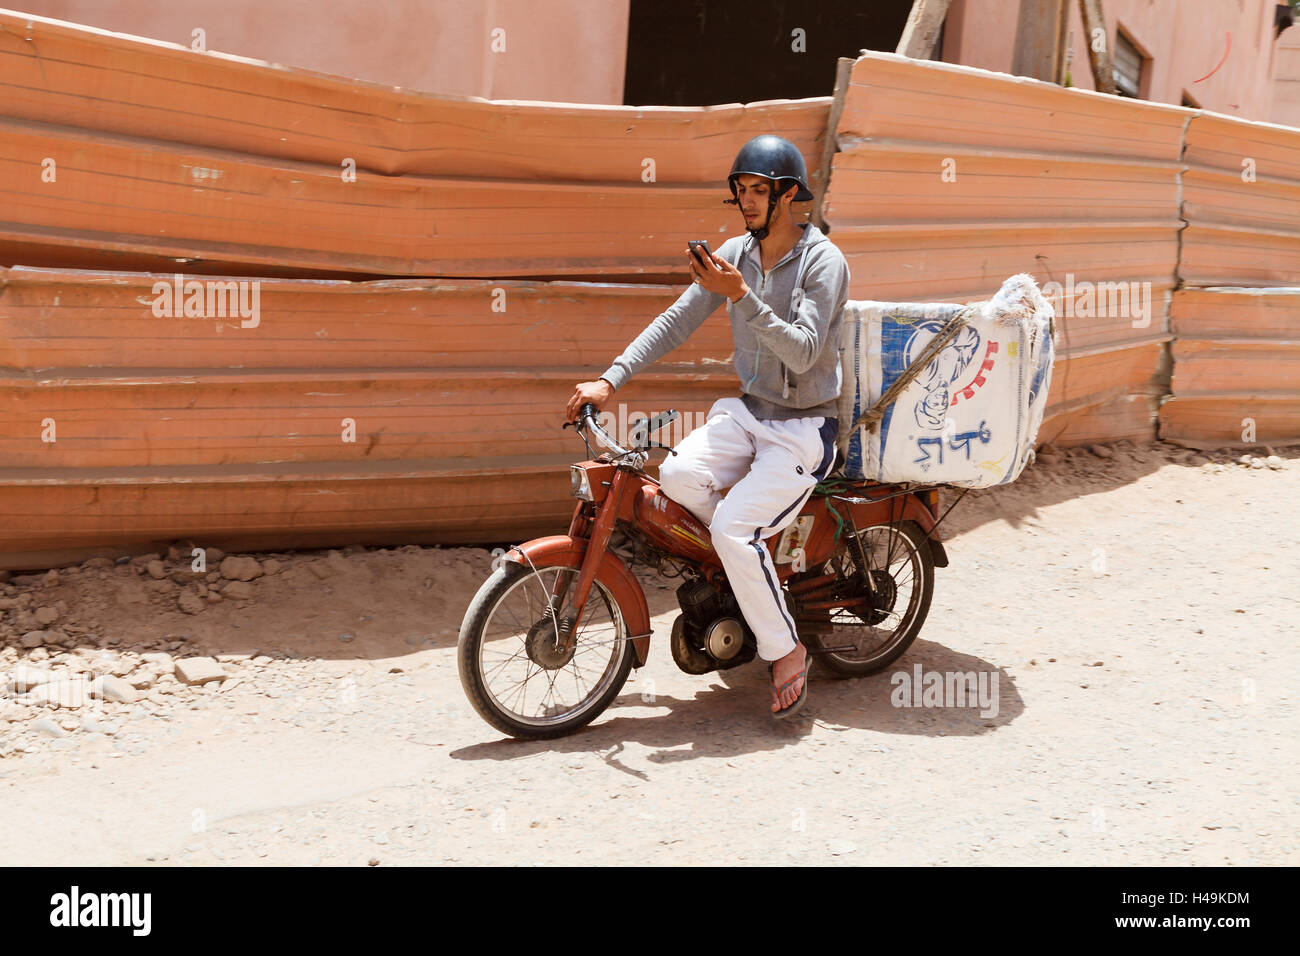 L'homme est une circonscription tout en moto texting, Marrakech, Maroc Banque D'Images